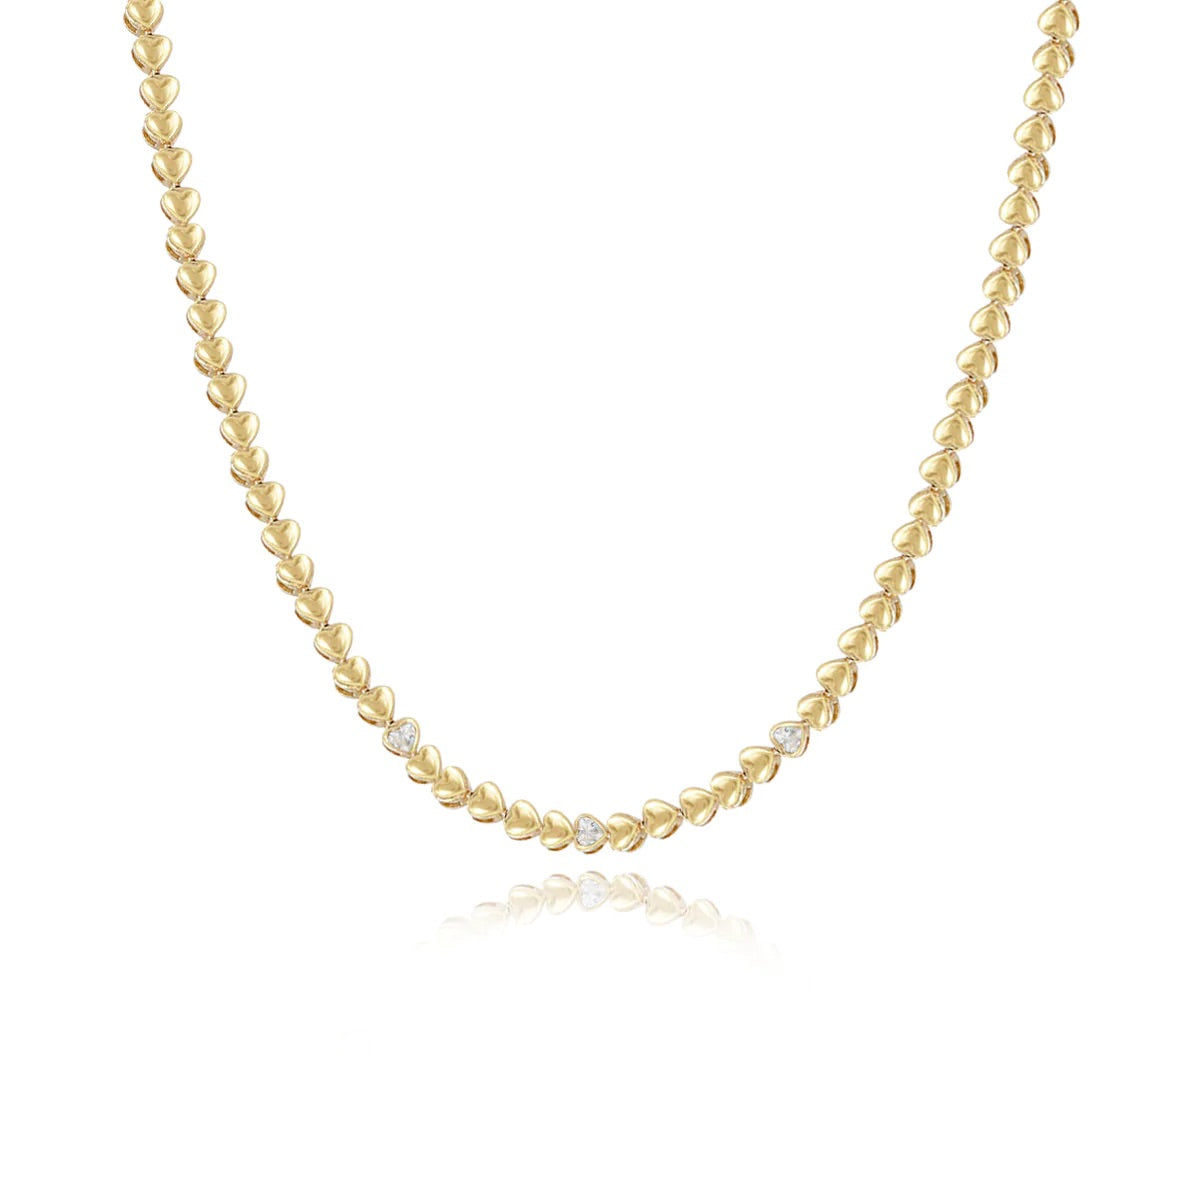 Golden Diamond Heart Tennis Necklace/3 Diamond Hearts